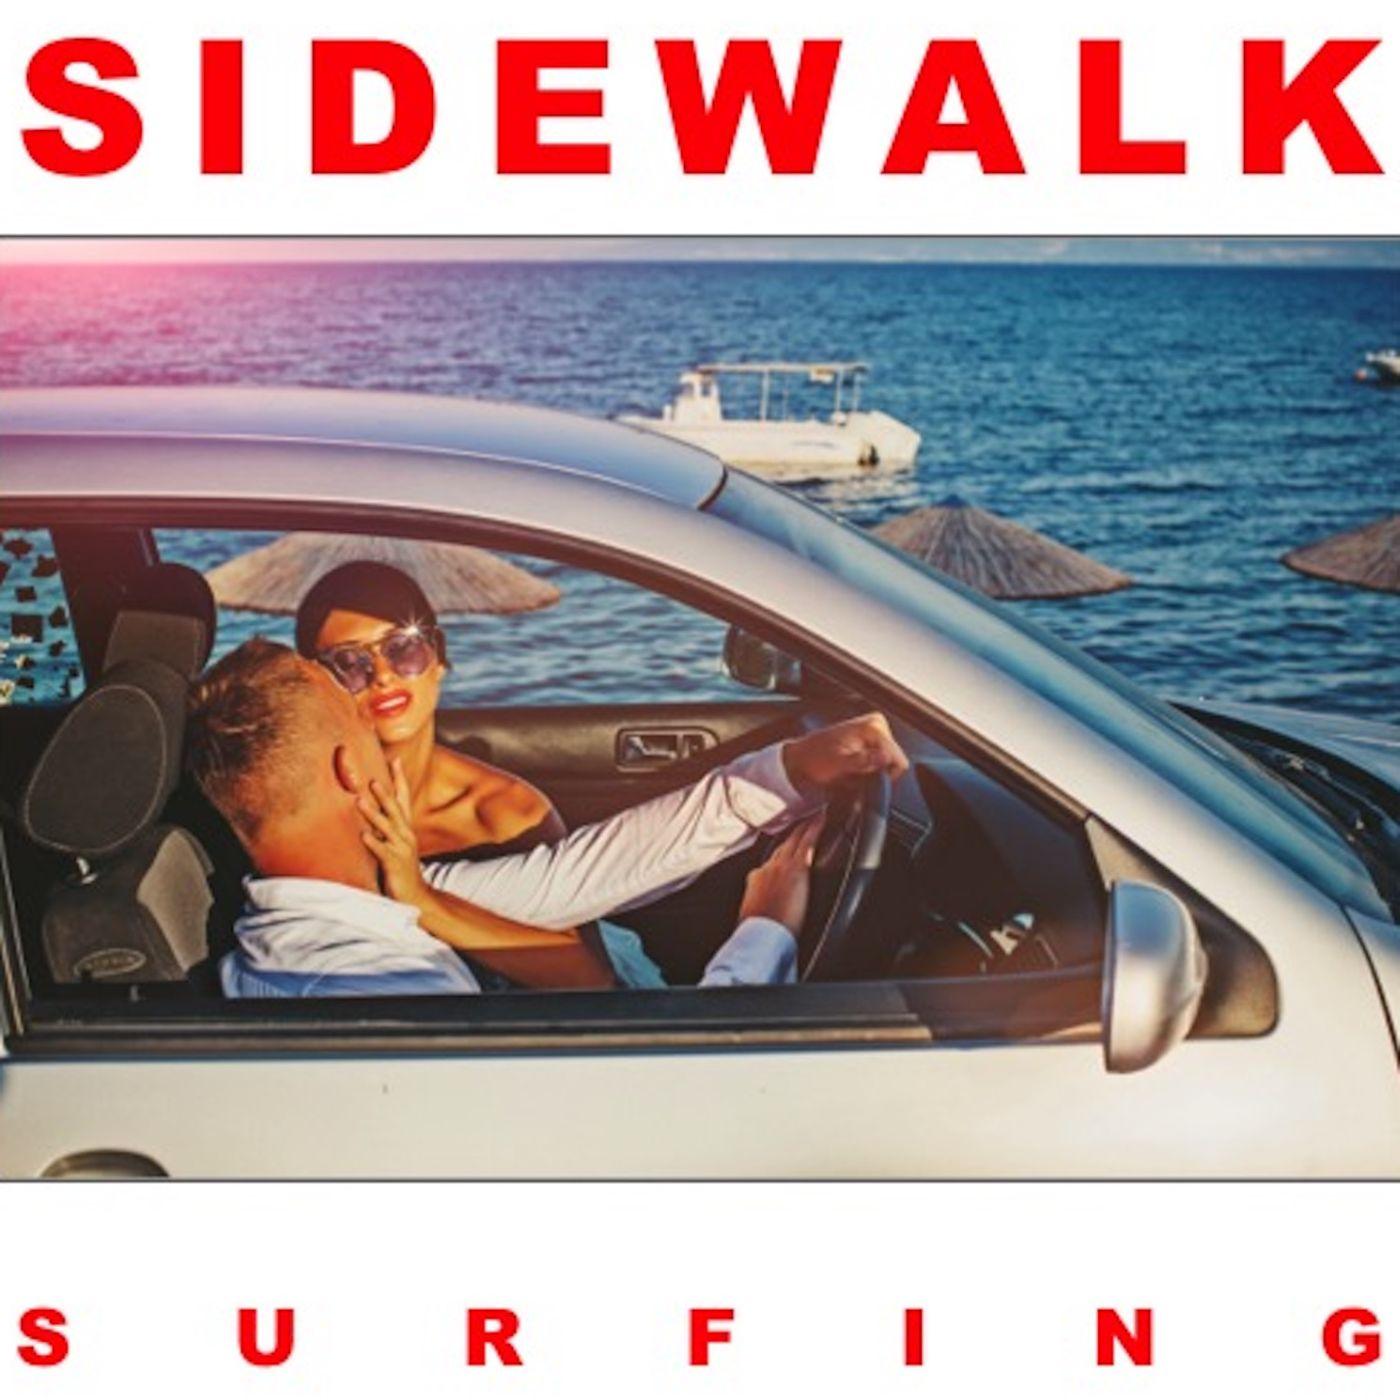 Sidewalk Surfing ('80s Version)